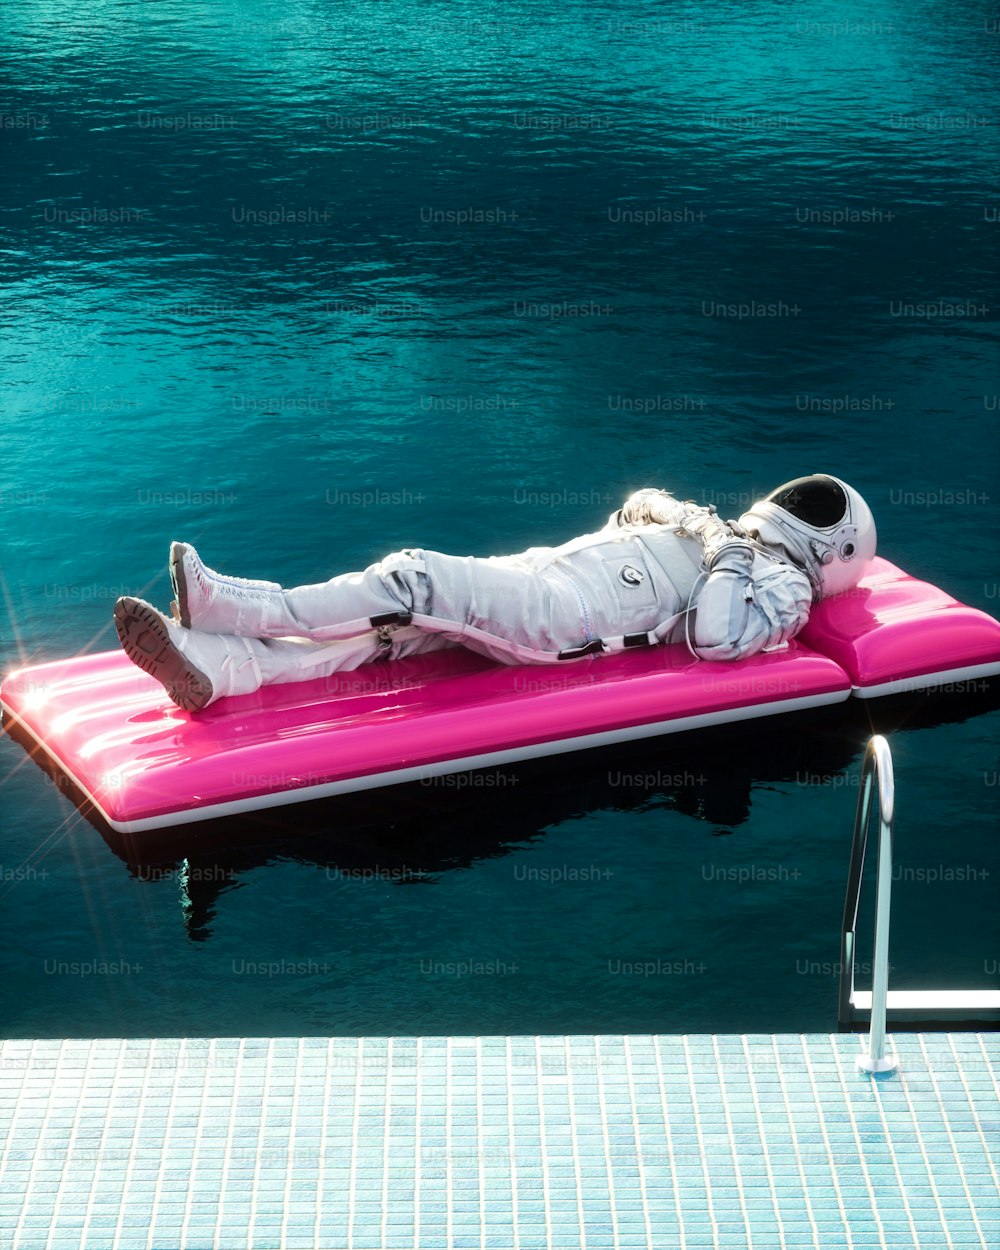 Un homme allongé sur un flotteur rose dans l’eau